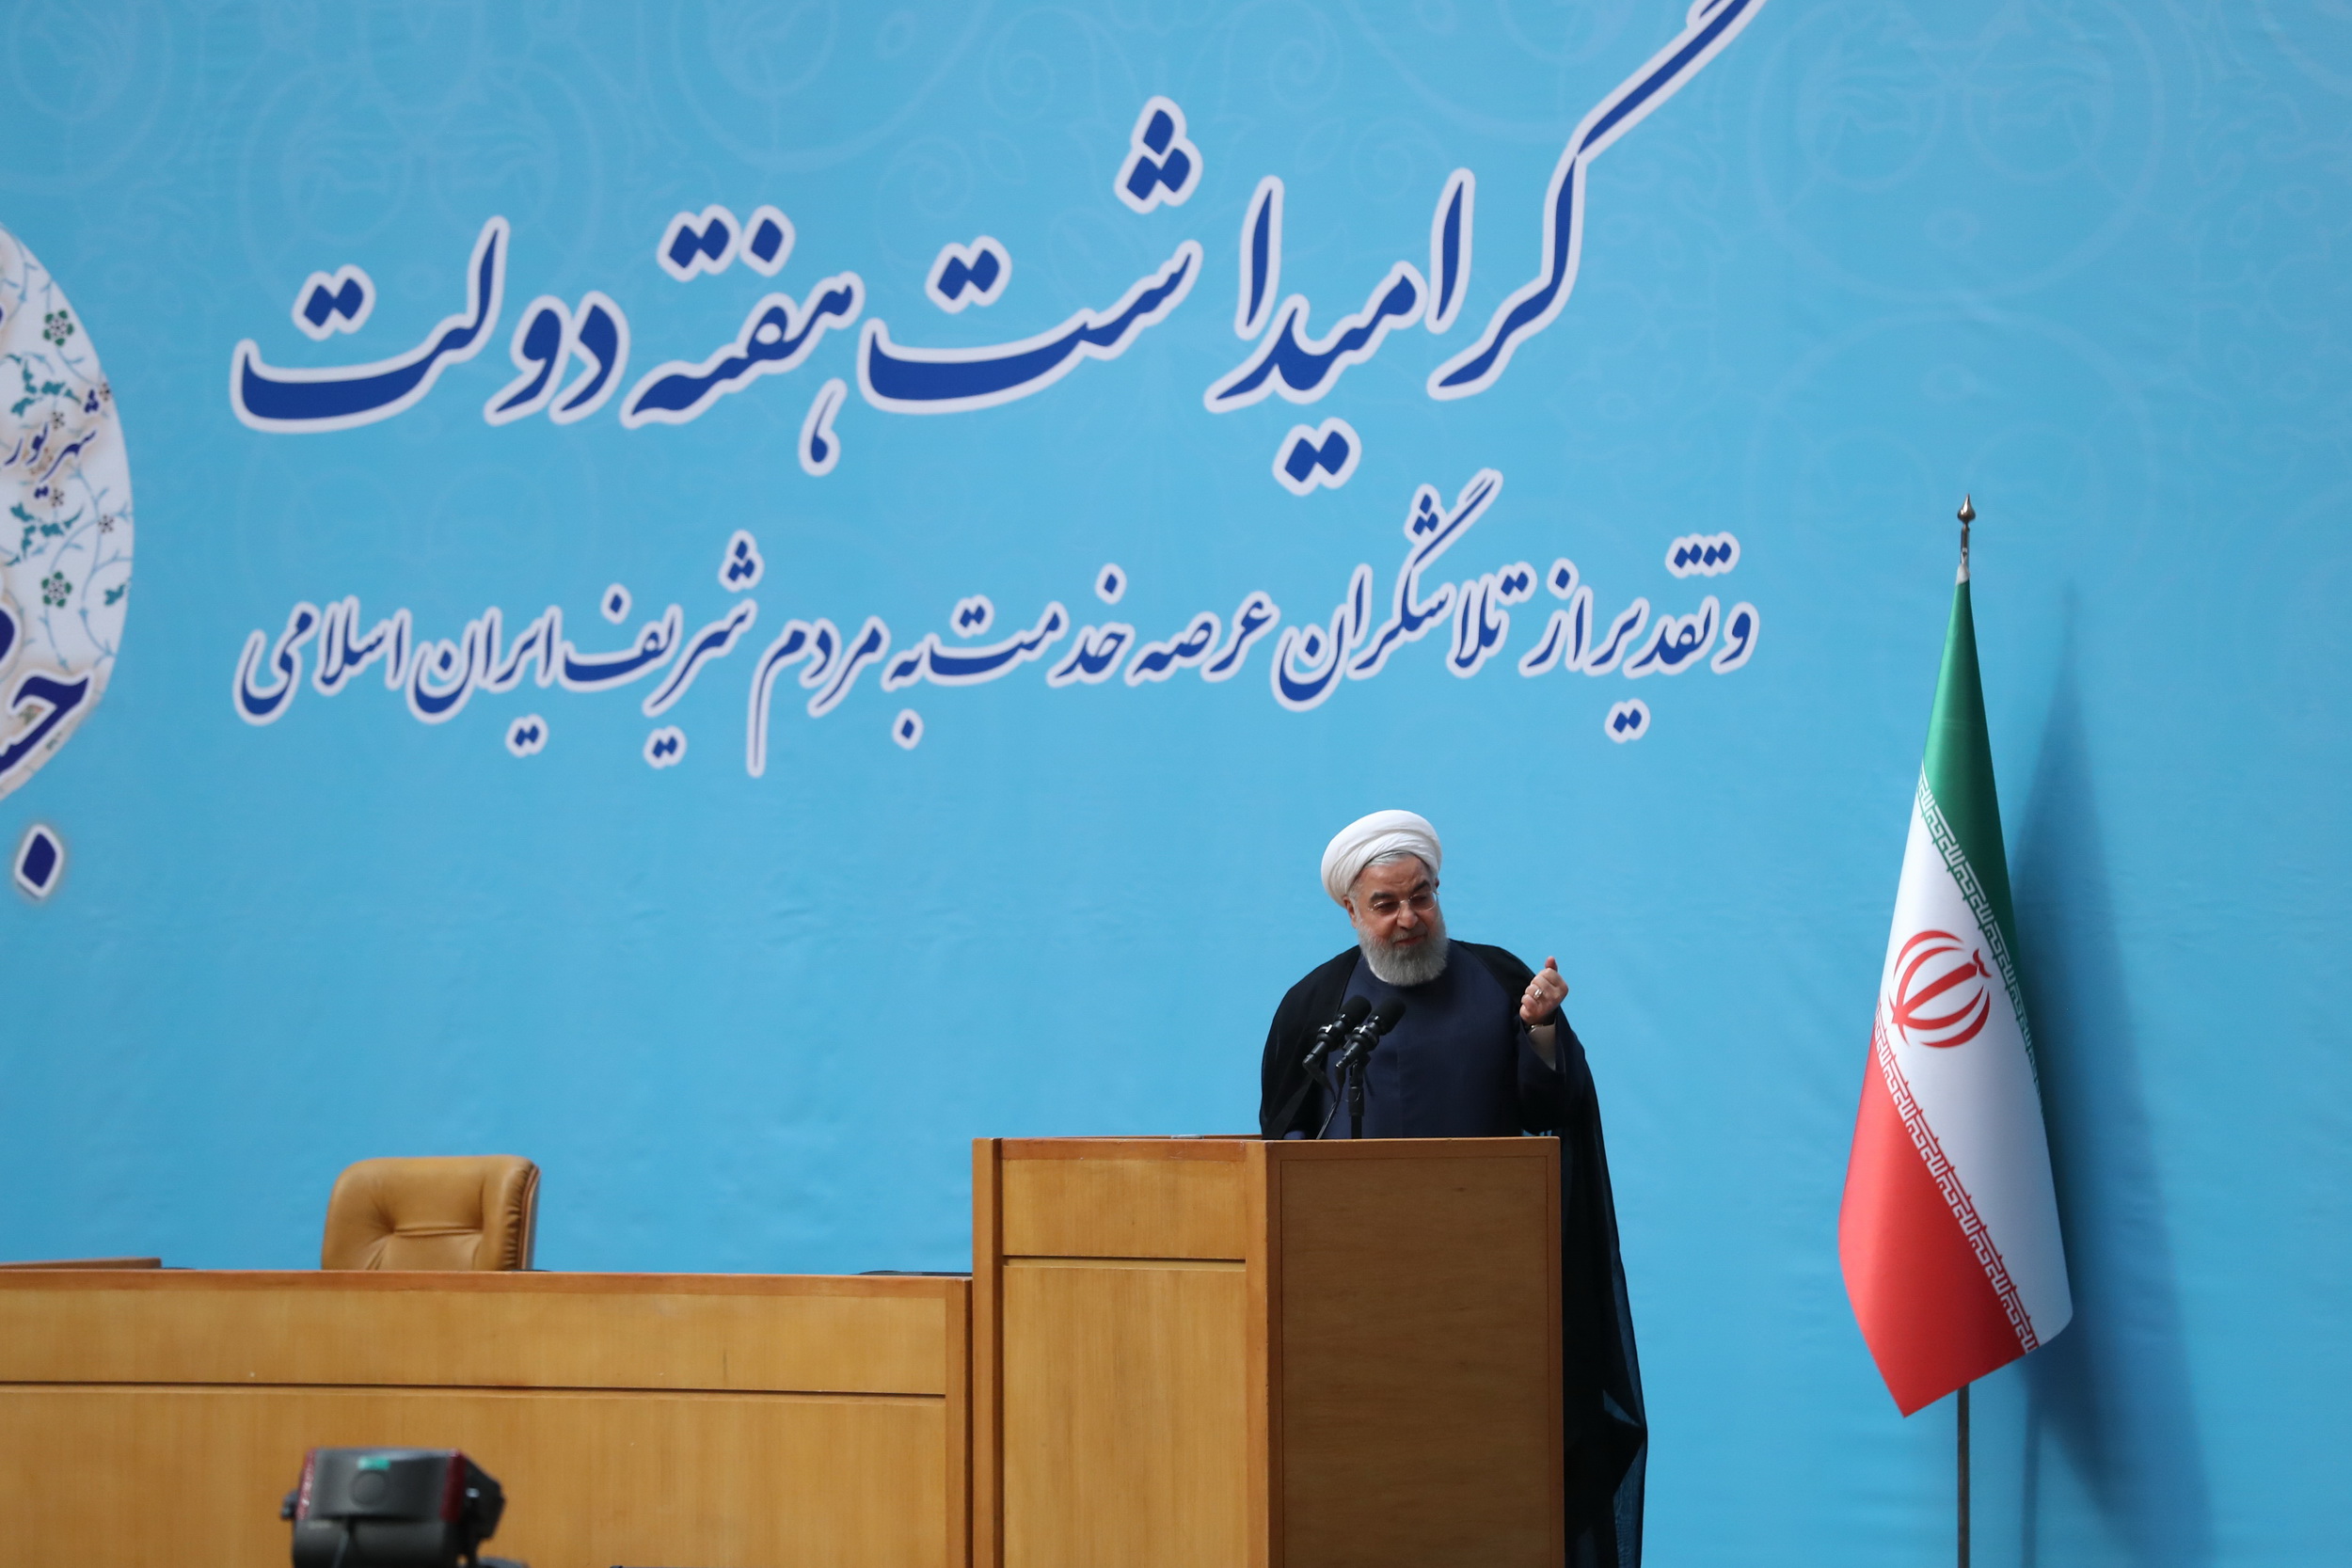 روحانی: نباید با چند ماه سختی عقب‌نشینی کنیم و امیدمان نا امید شود/ امروز جنگ، جنگ اقتصادی و تبلیغاتی است و دولت در صف مقدم این جنگ است